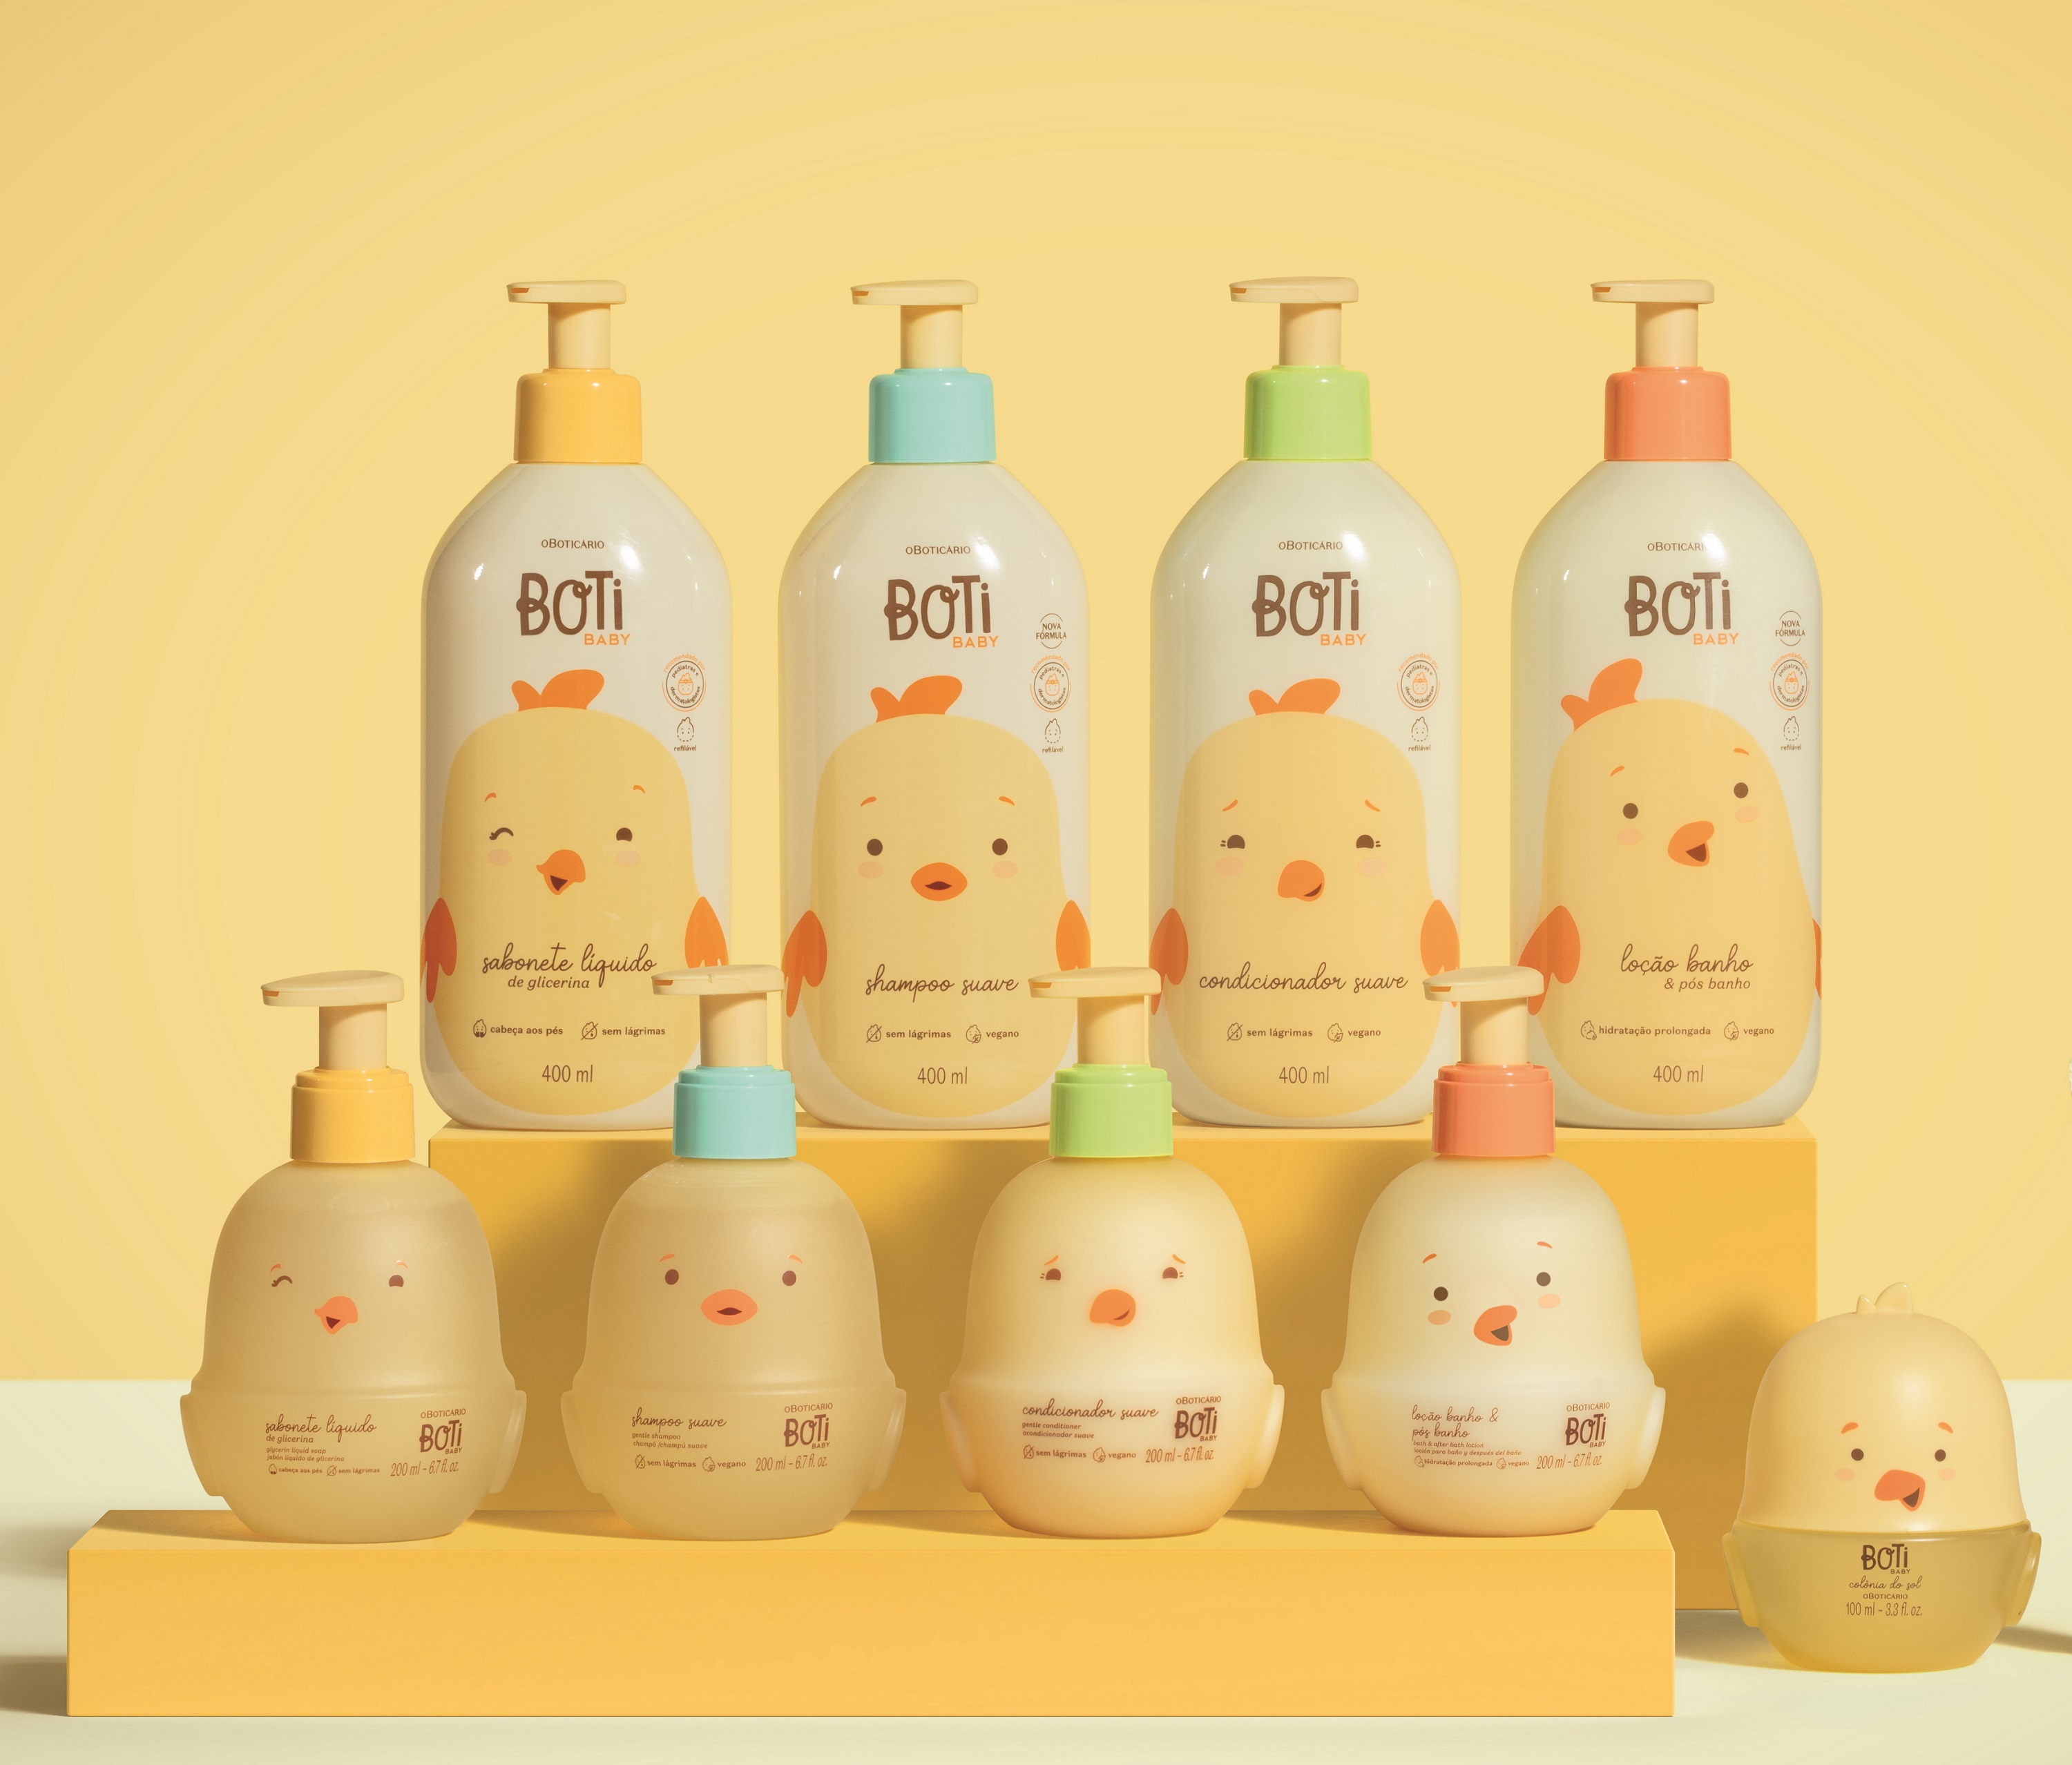 Boti Baby - O Boticário reformula linha Boti Baby e apresenta tecnologia exclusiva que protege e fortalece a pele do bebê desde os primeiros dias de vida